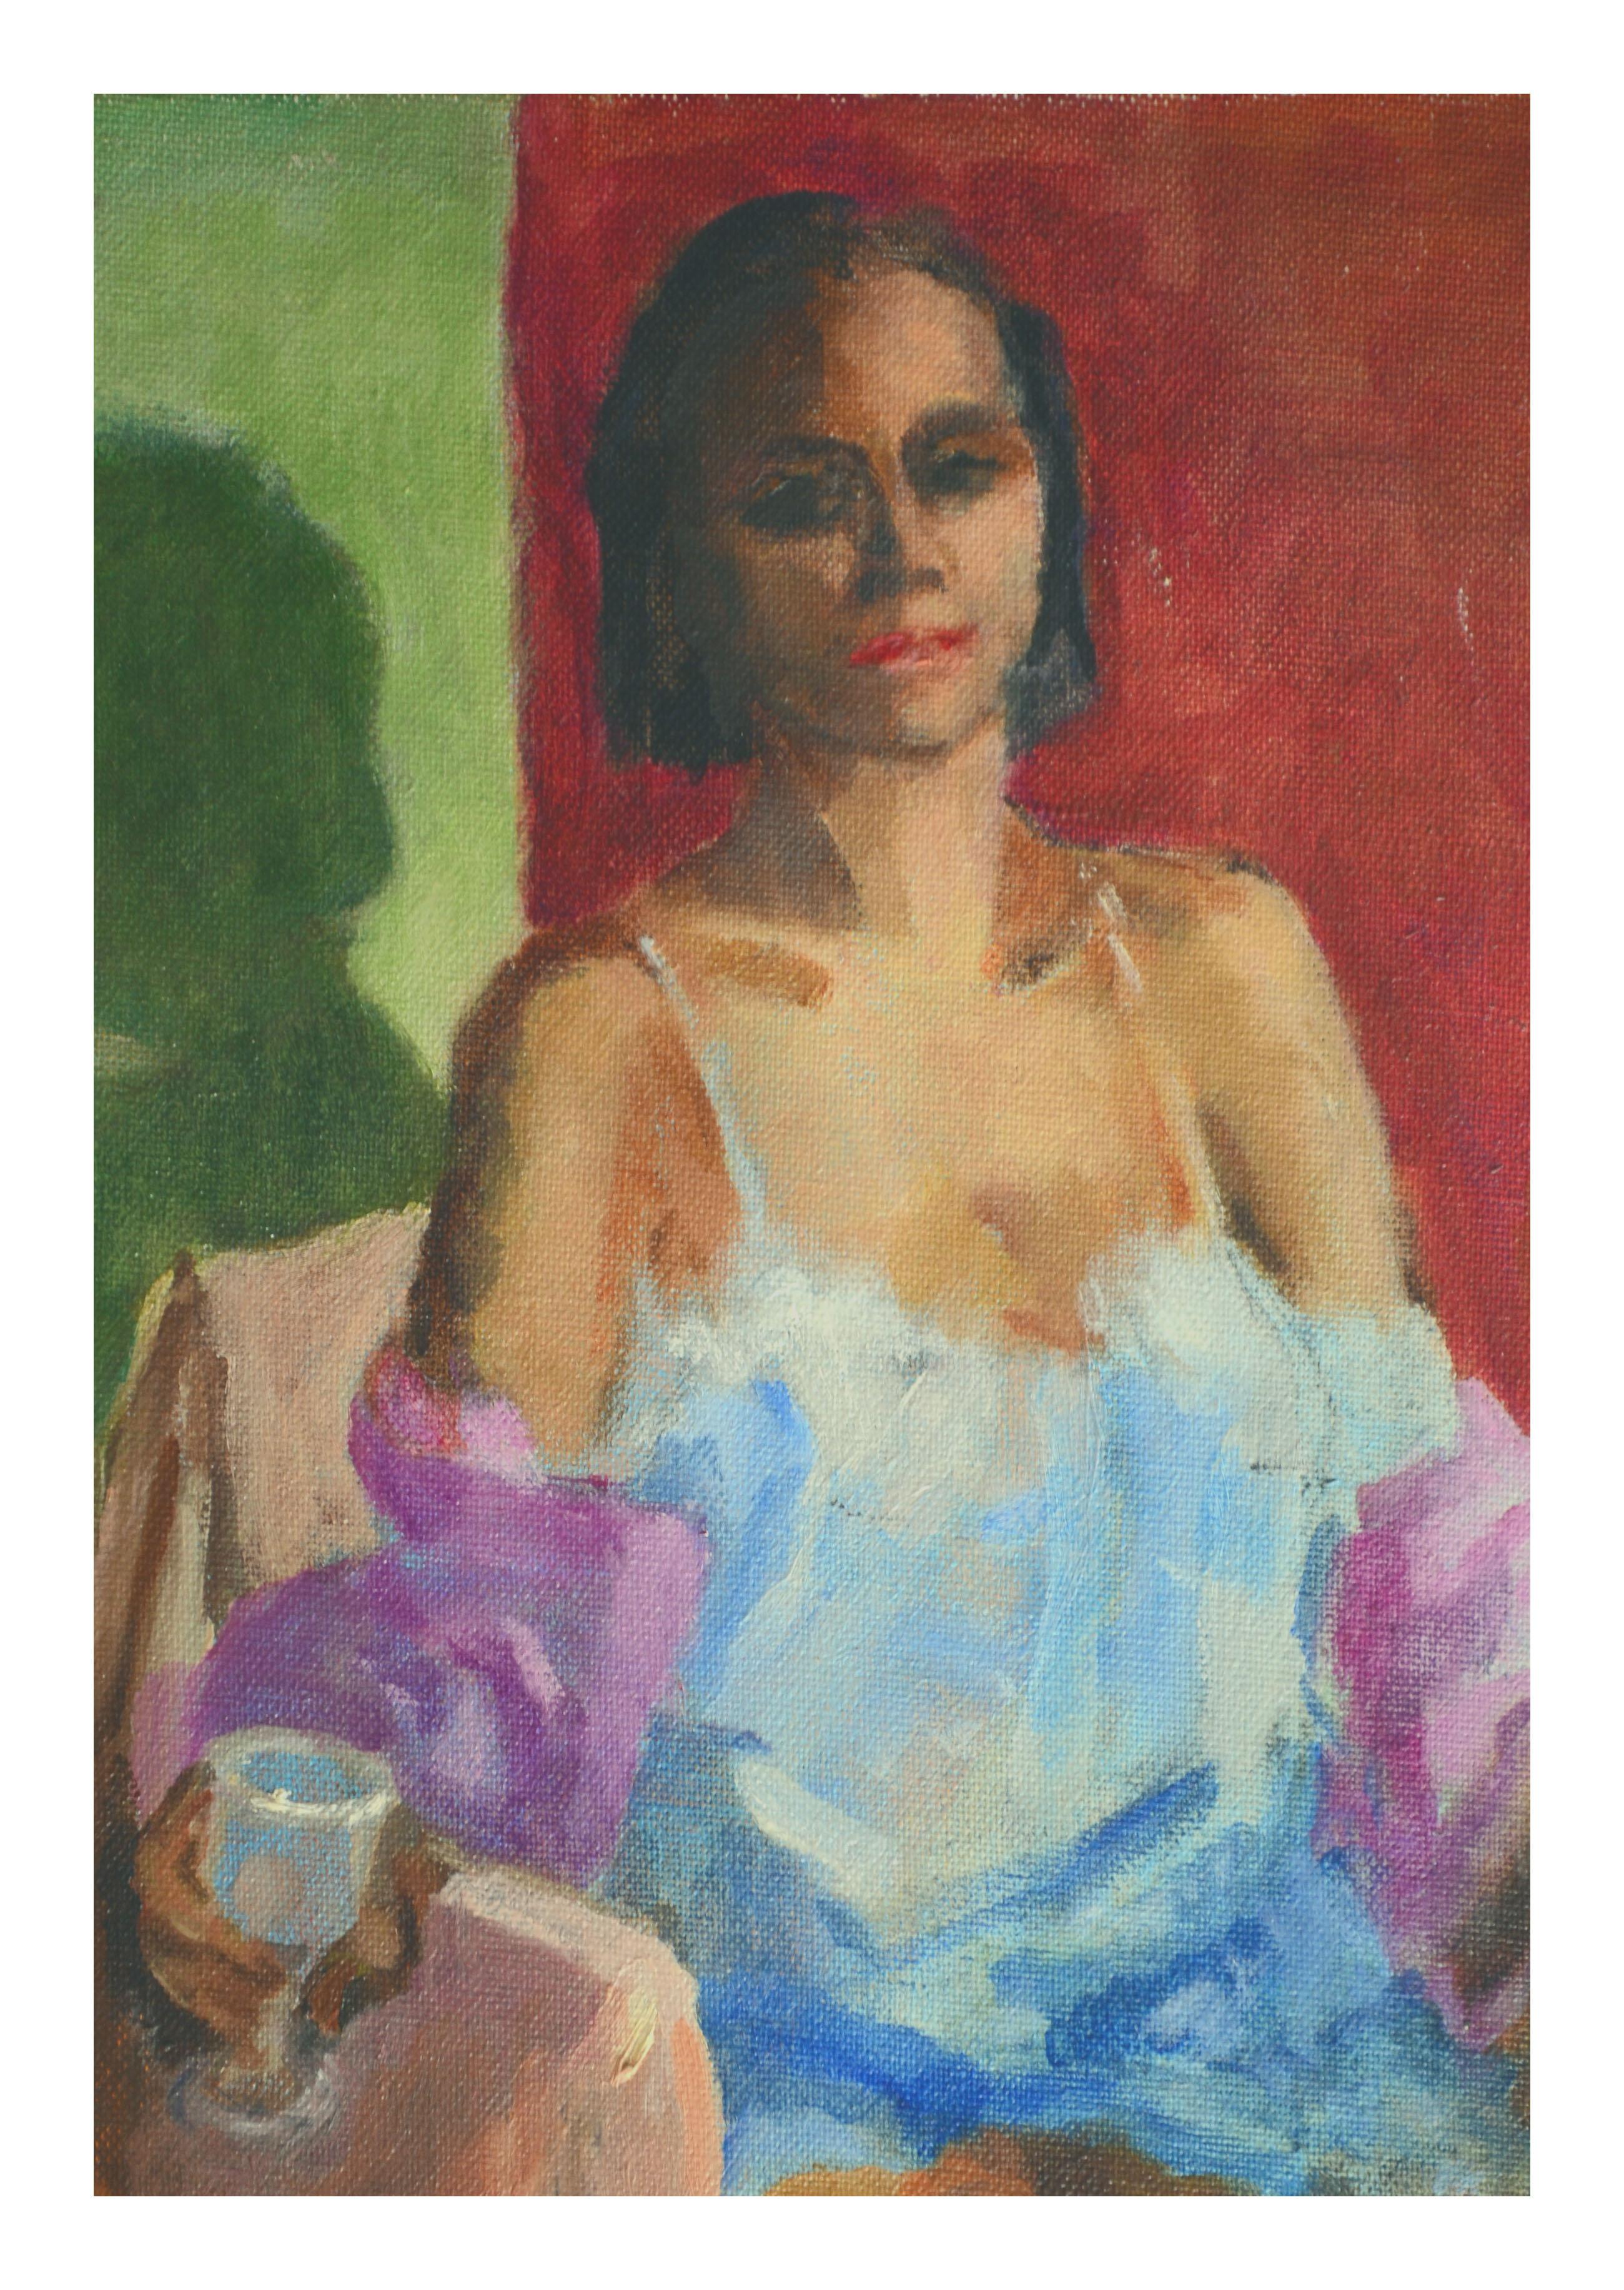 Sitzende Figur im Boudoir-Stil (Amerikanischer Impressionismus), Painting, von Patricia Gillfillan